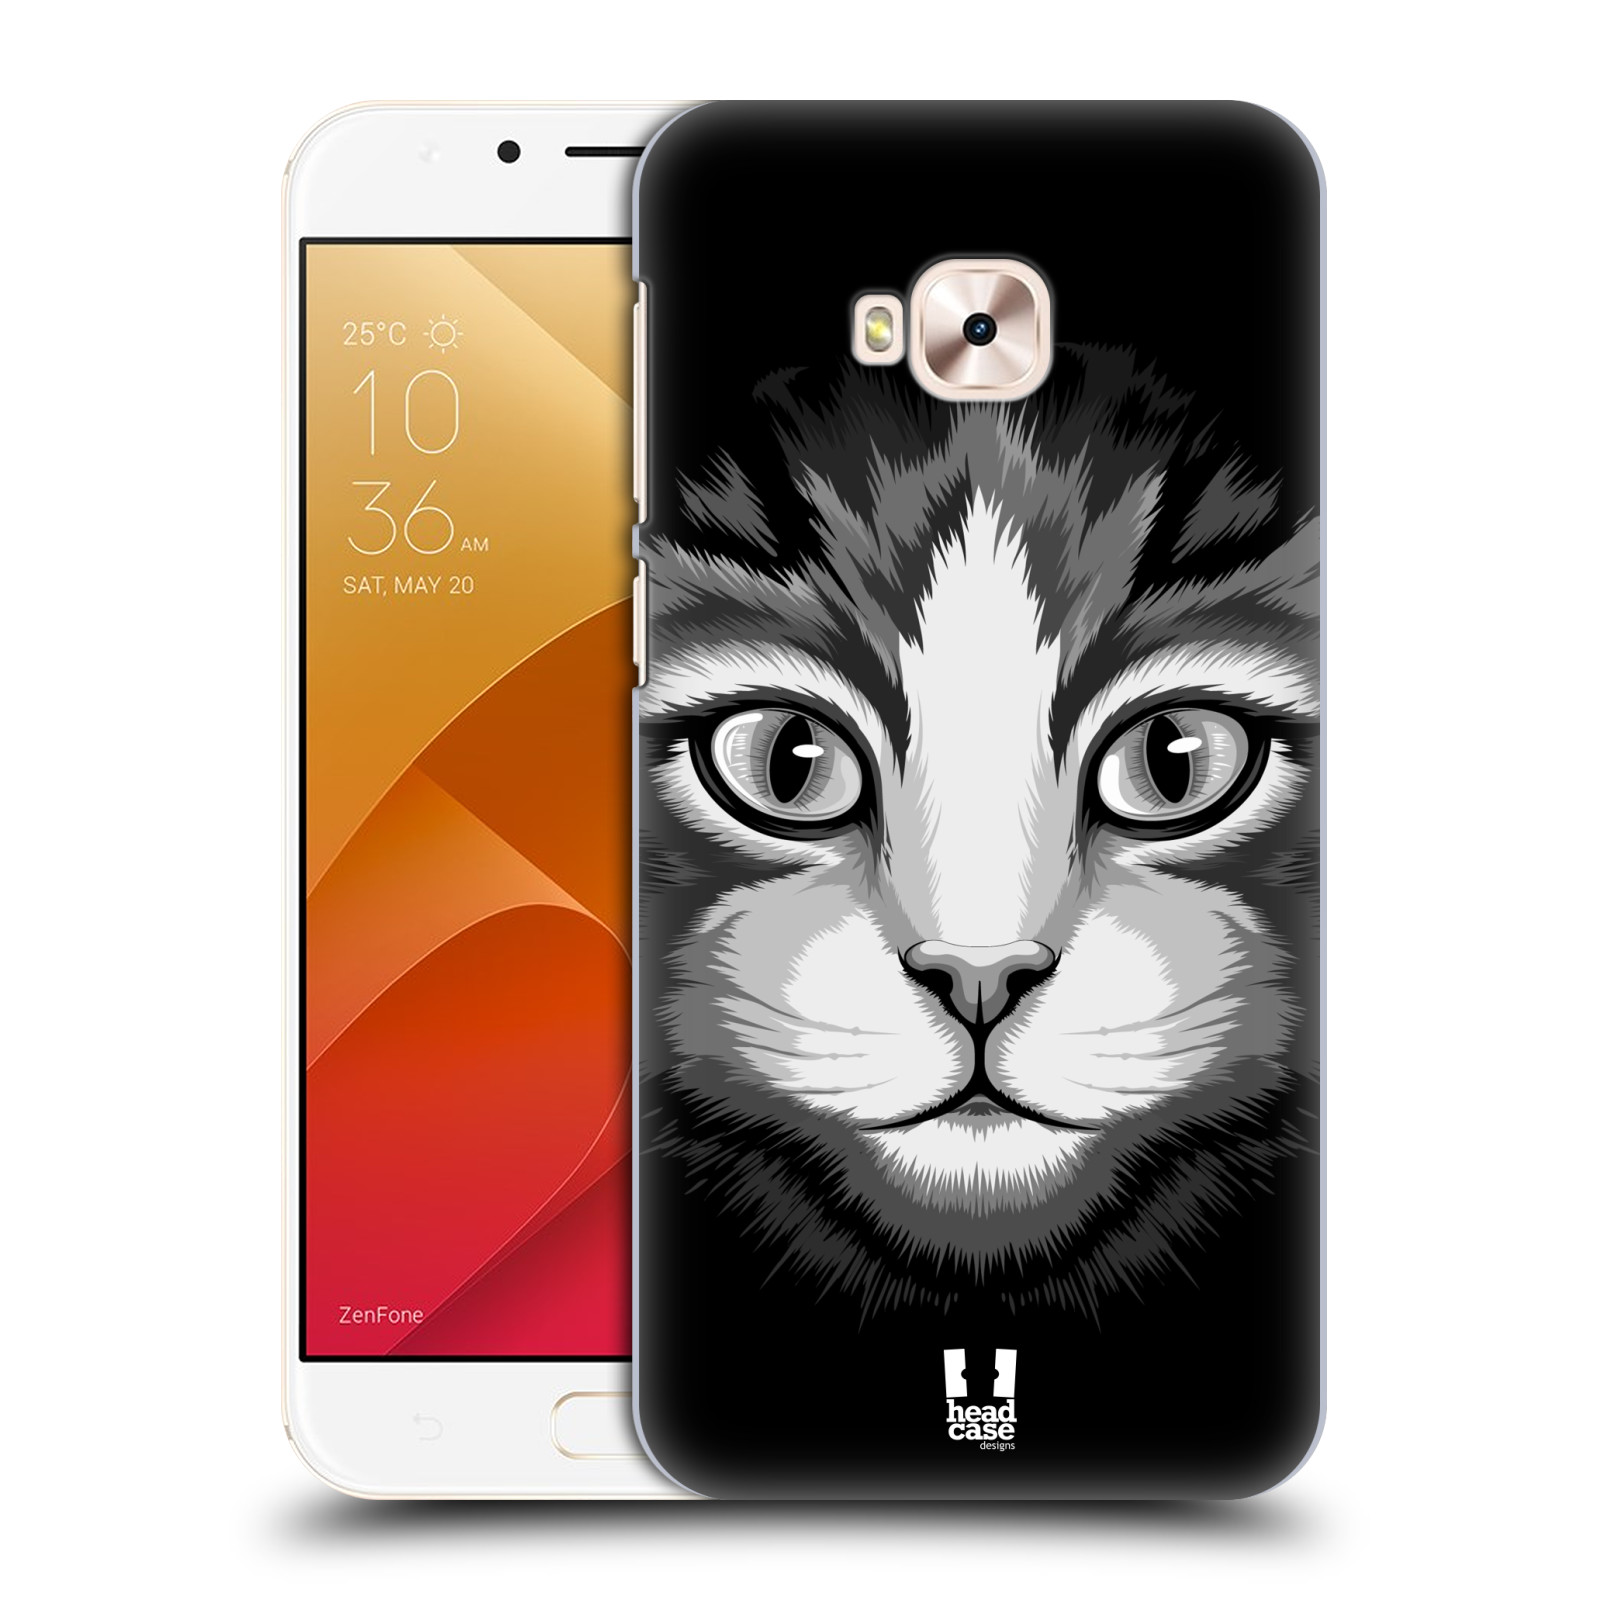 HEAD CASE plastový obal na mobil Asus Zenfone 4 Selfie Pro ZD552KL vzor Zvíře kreslená tvář 2 kočička